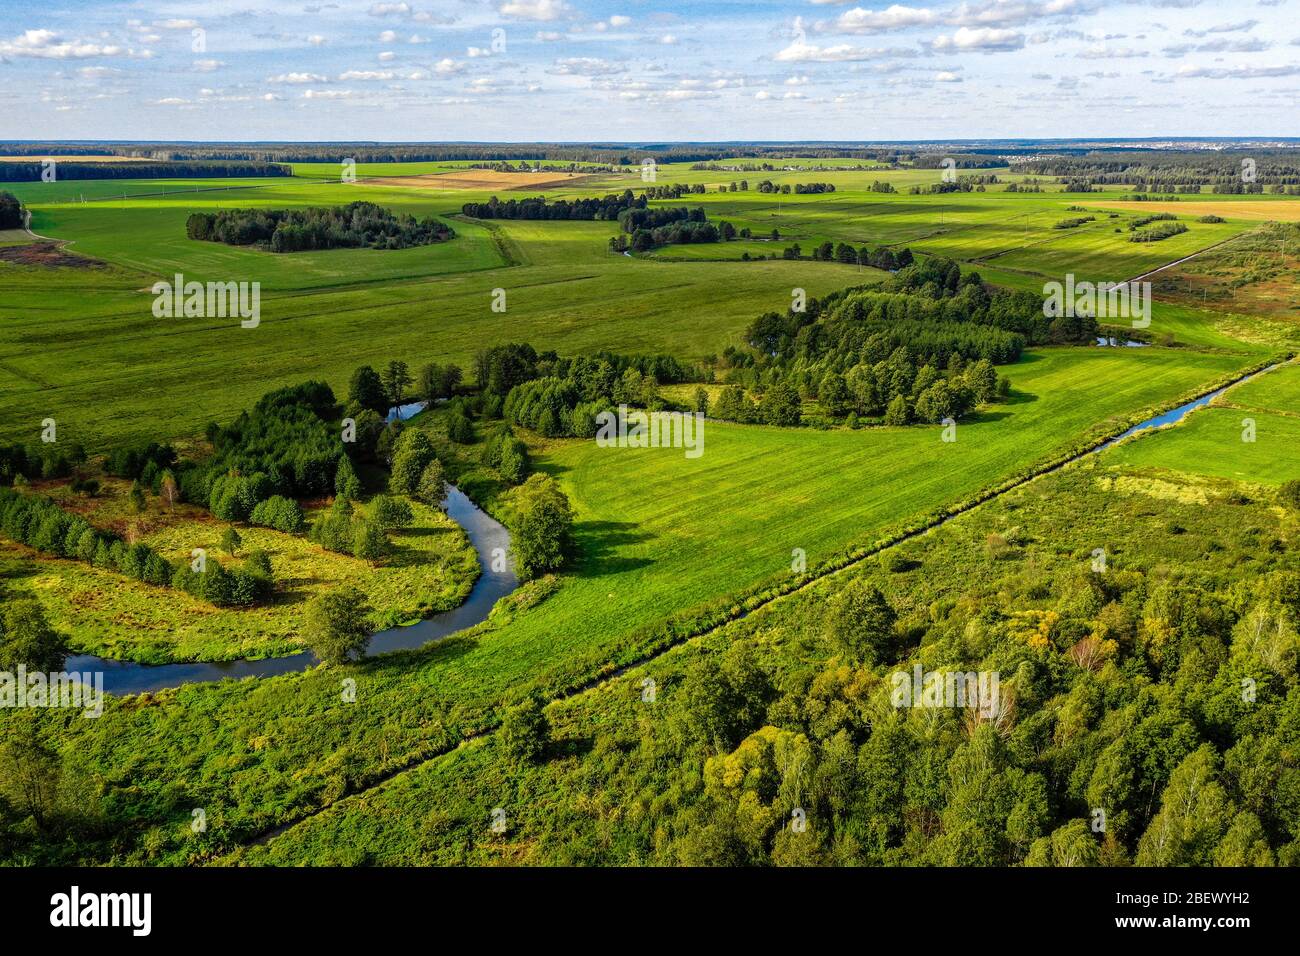 Vista aerea sul paesaggio rurale con un fiume. Campagna in bielorussia vista dall'alto Foto Stock